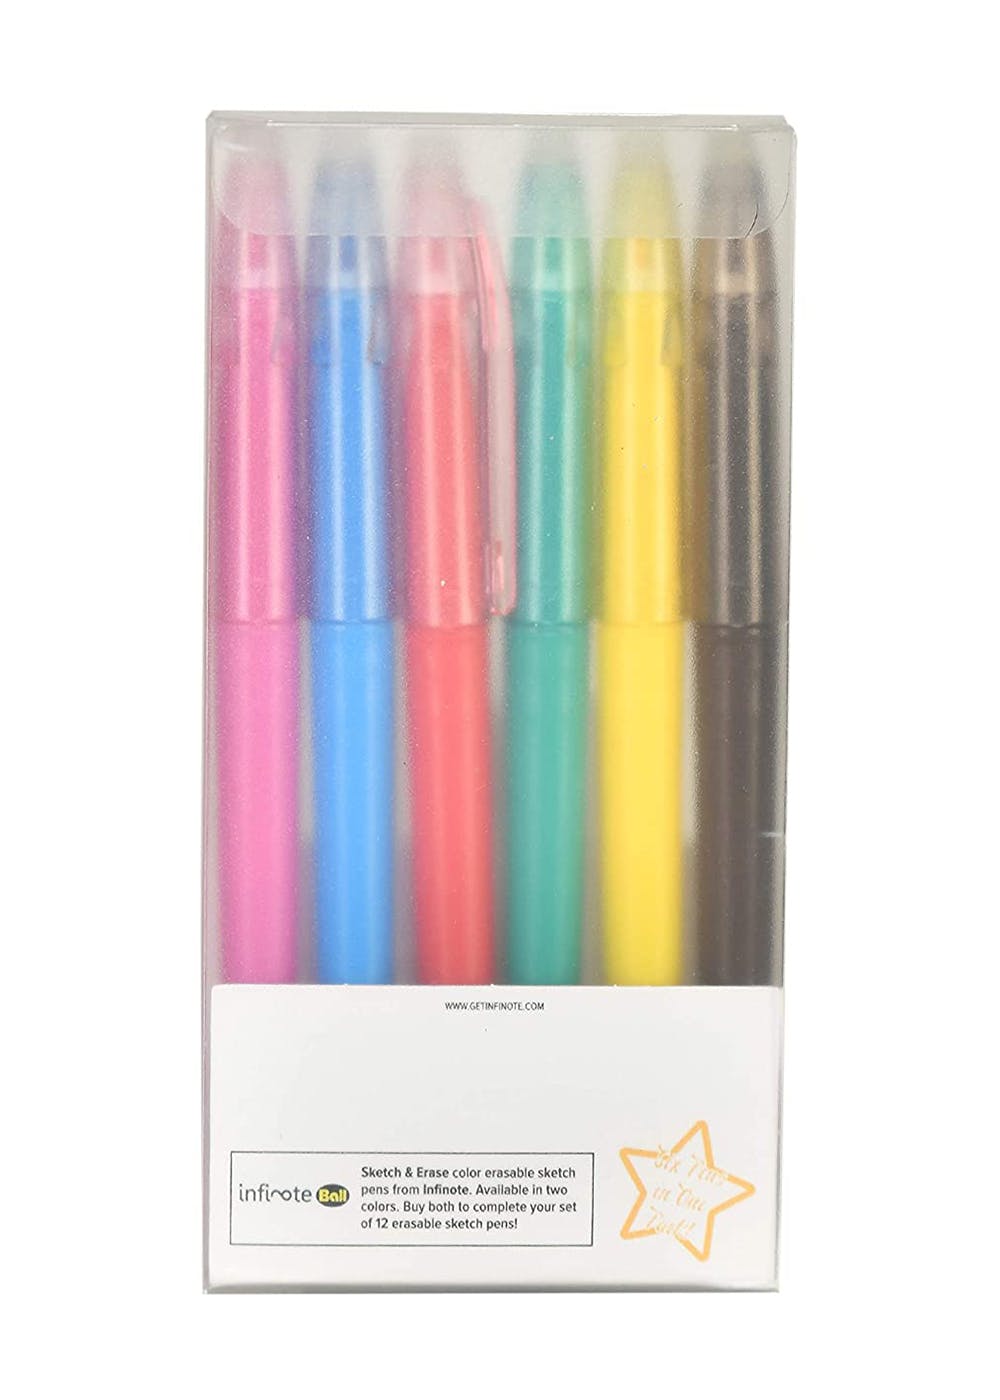 Erasable Color Pens 